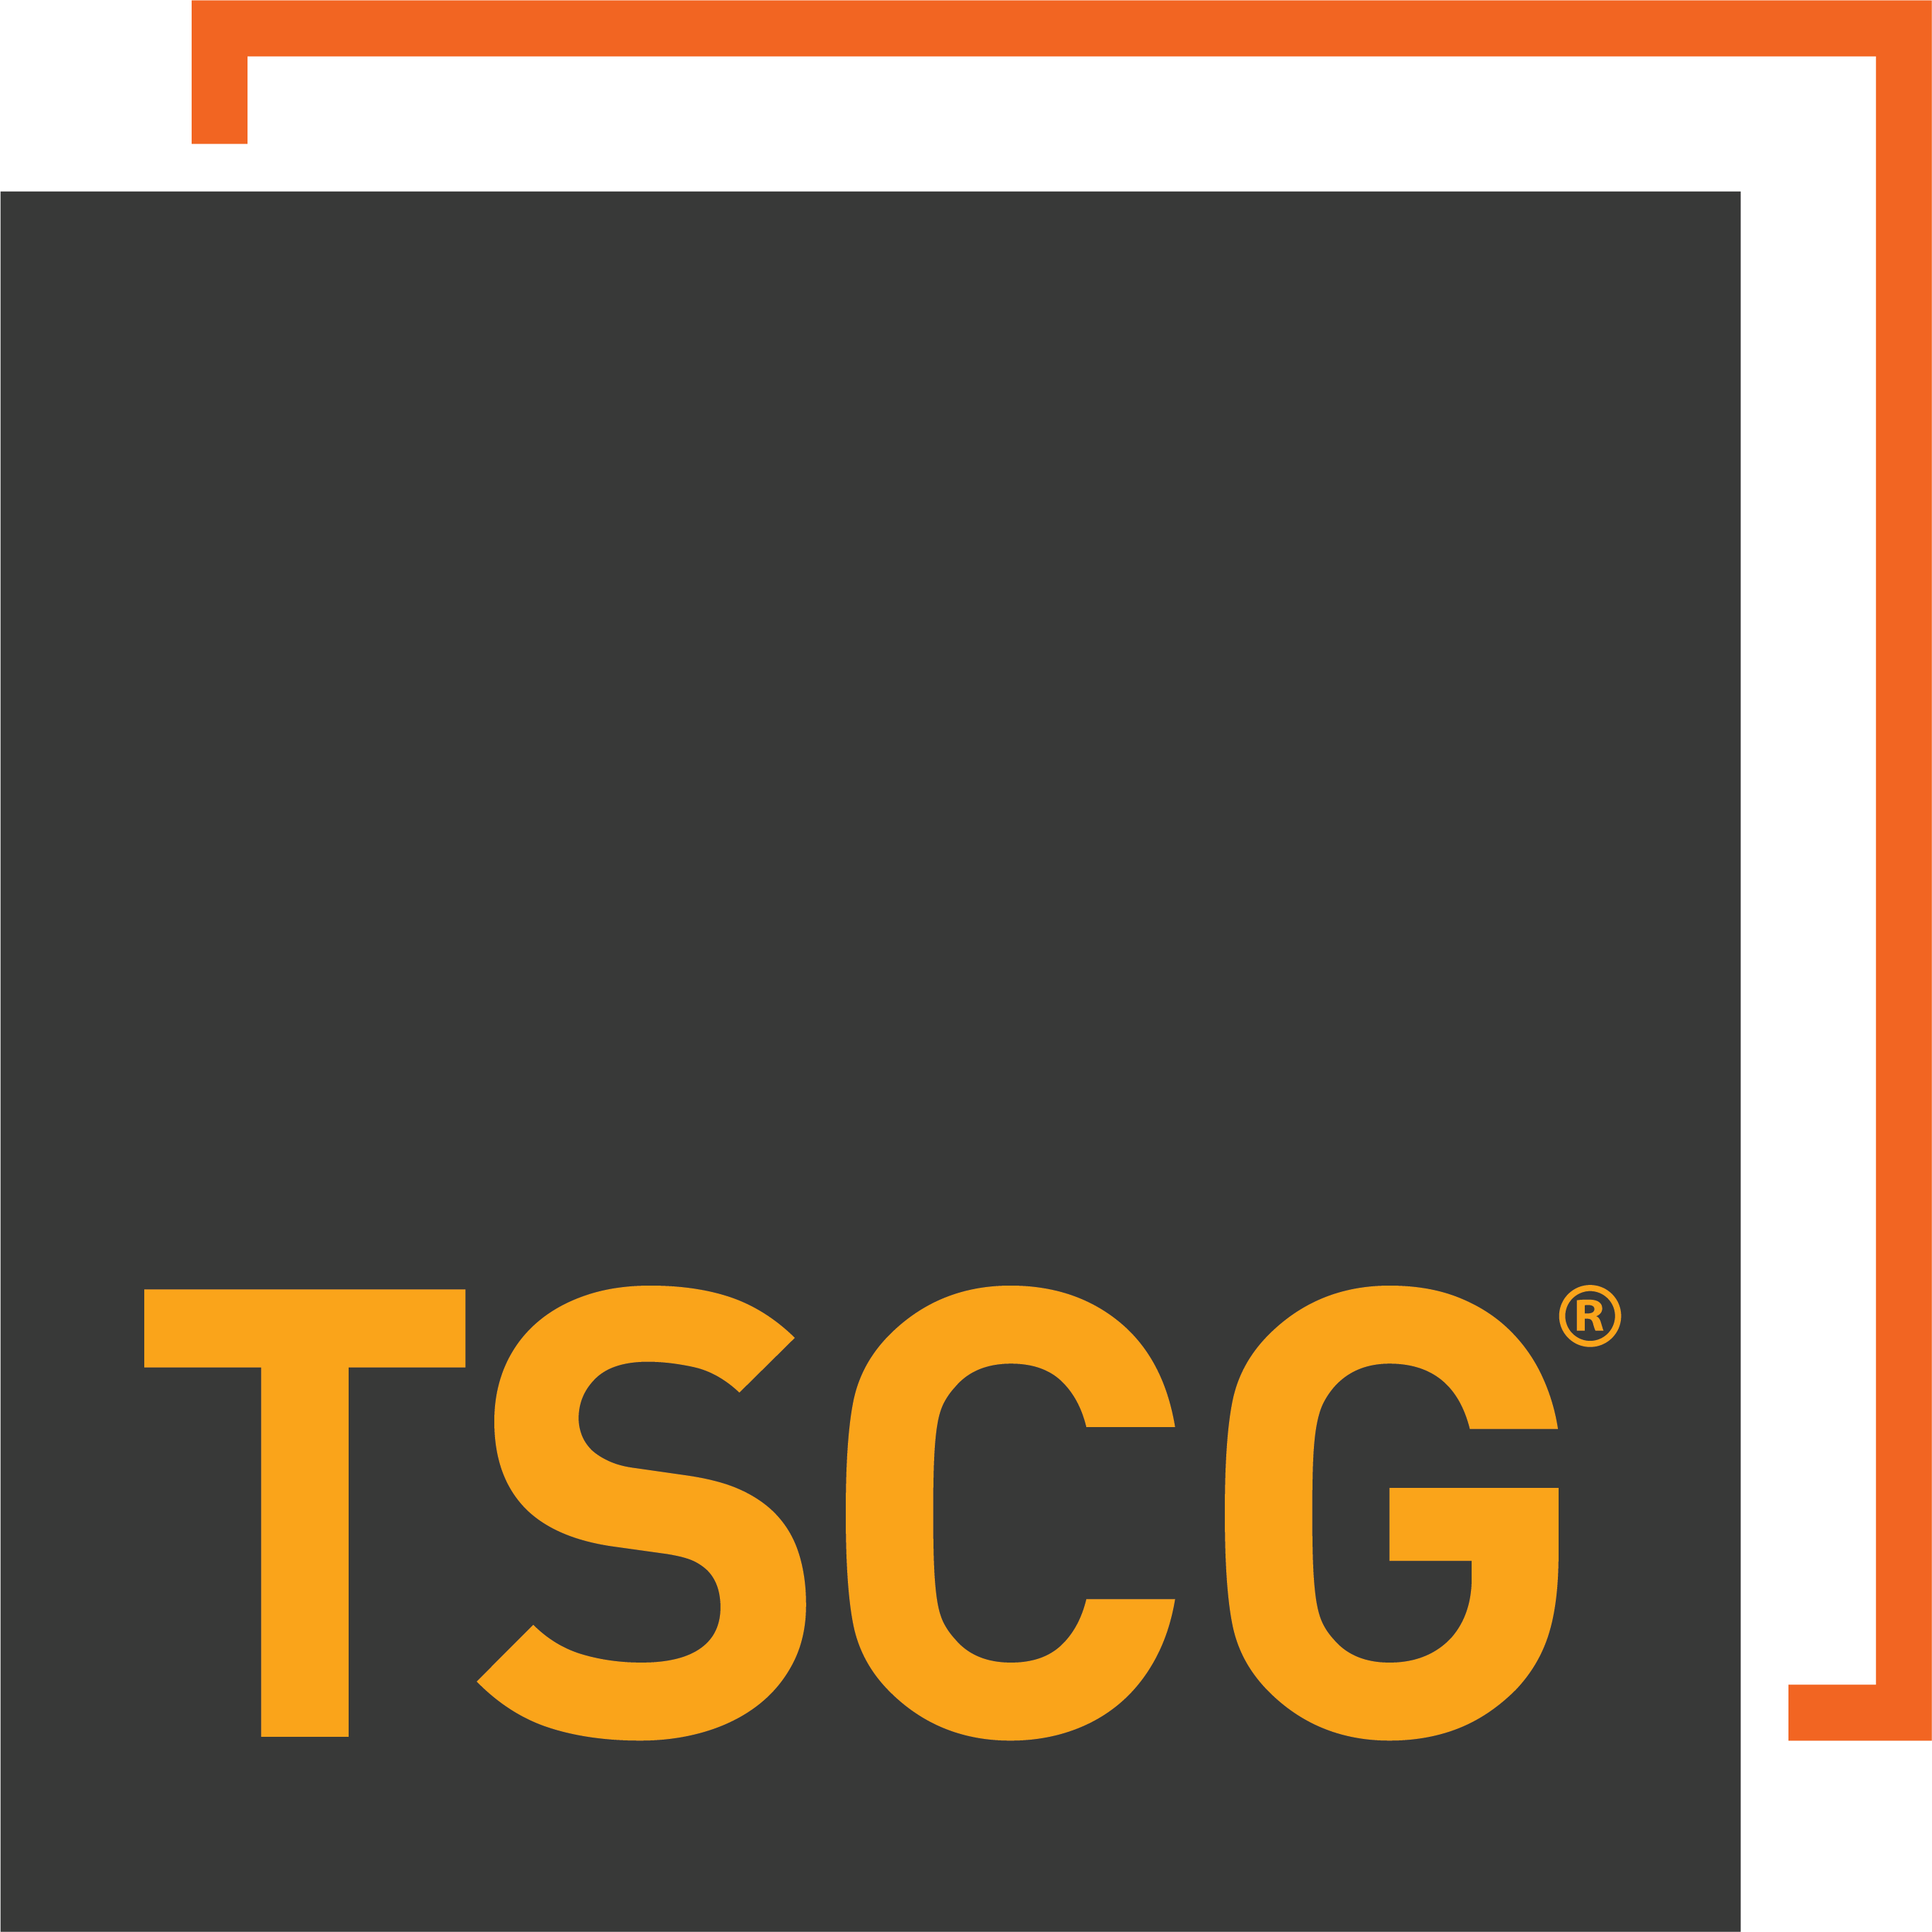 TSCG logo